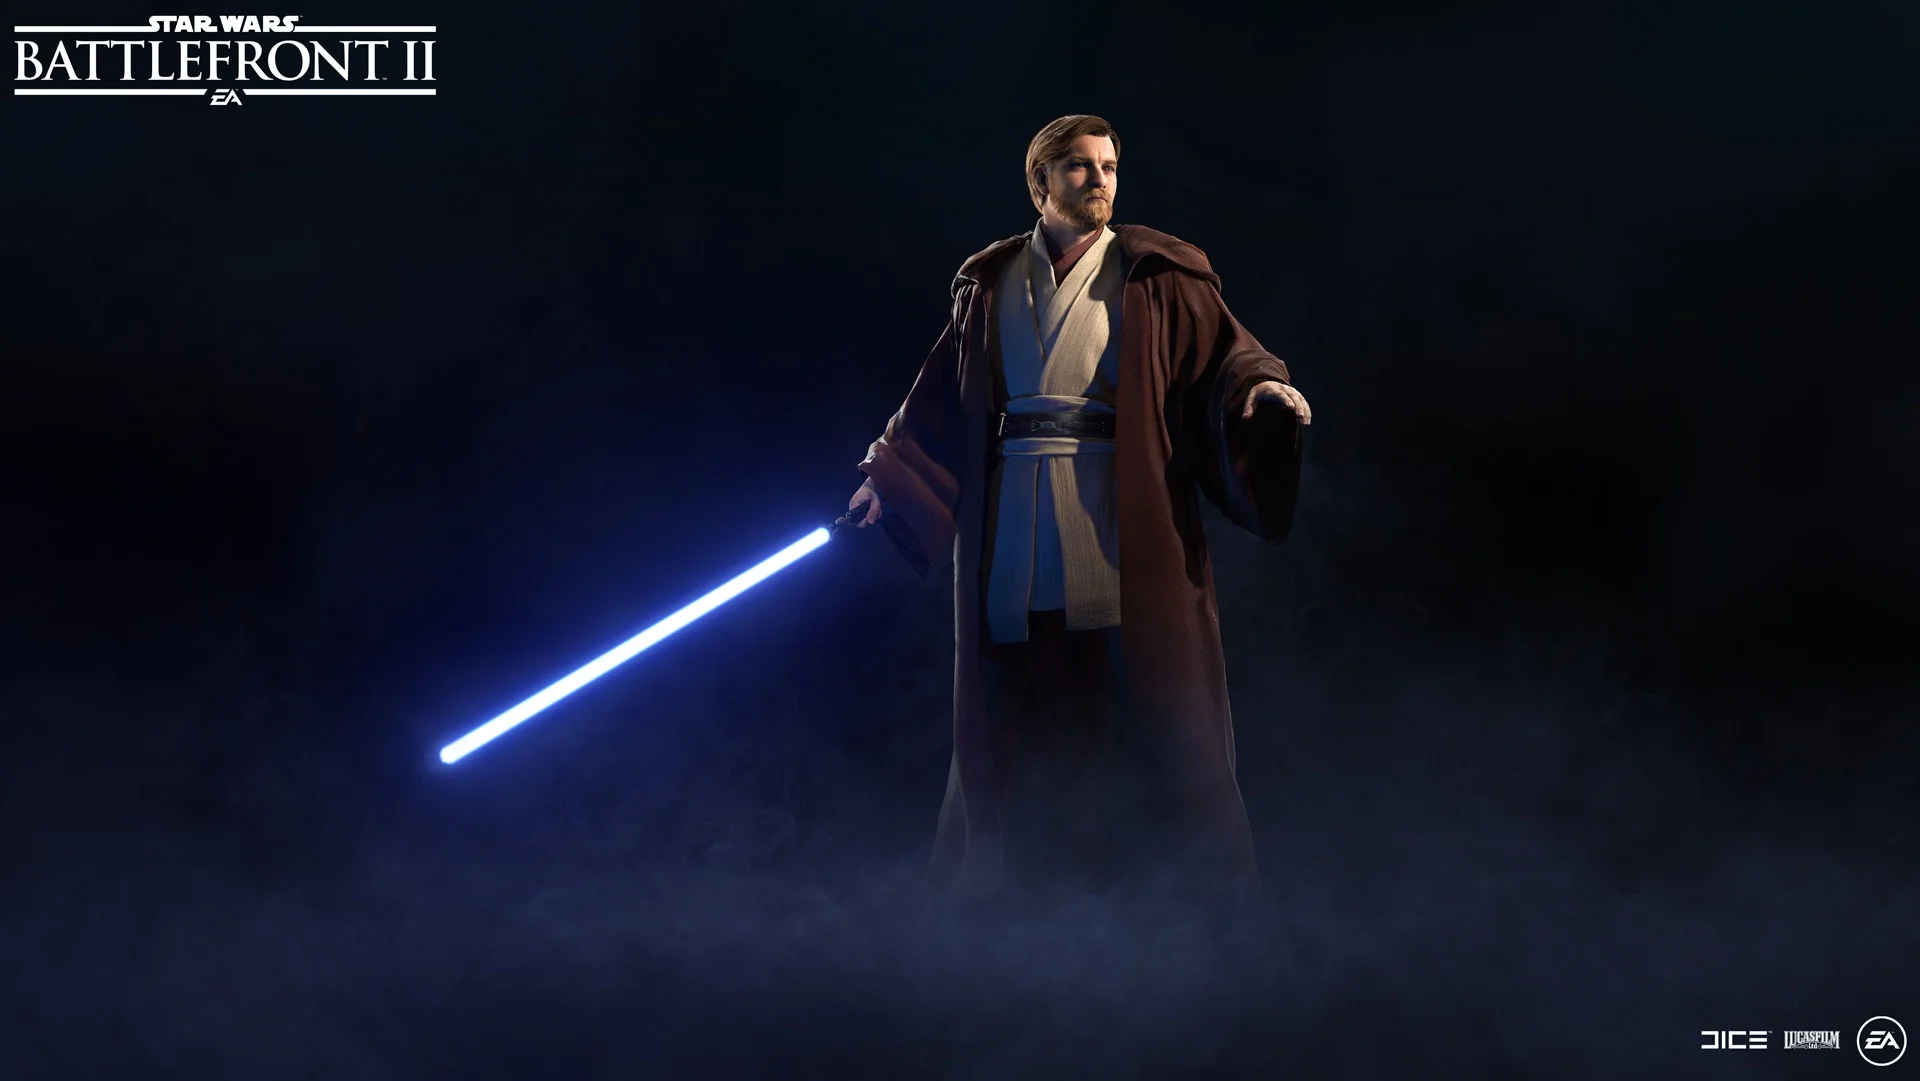 Генерал Кеноби появится в Star Wars: Battlefront II через неделю - фото 2